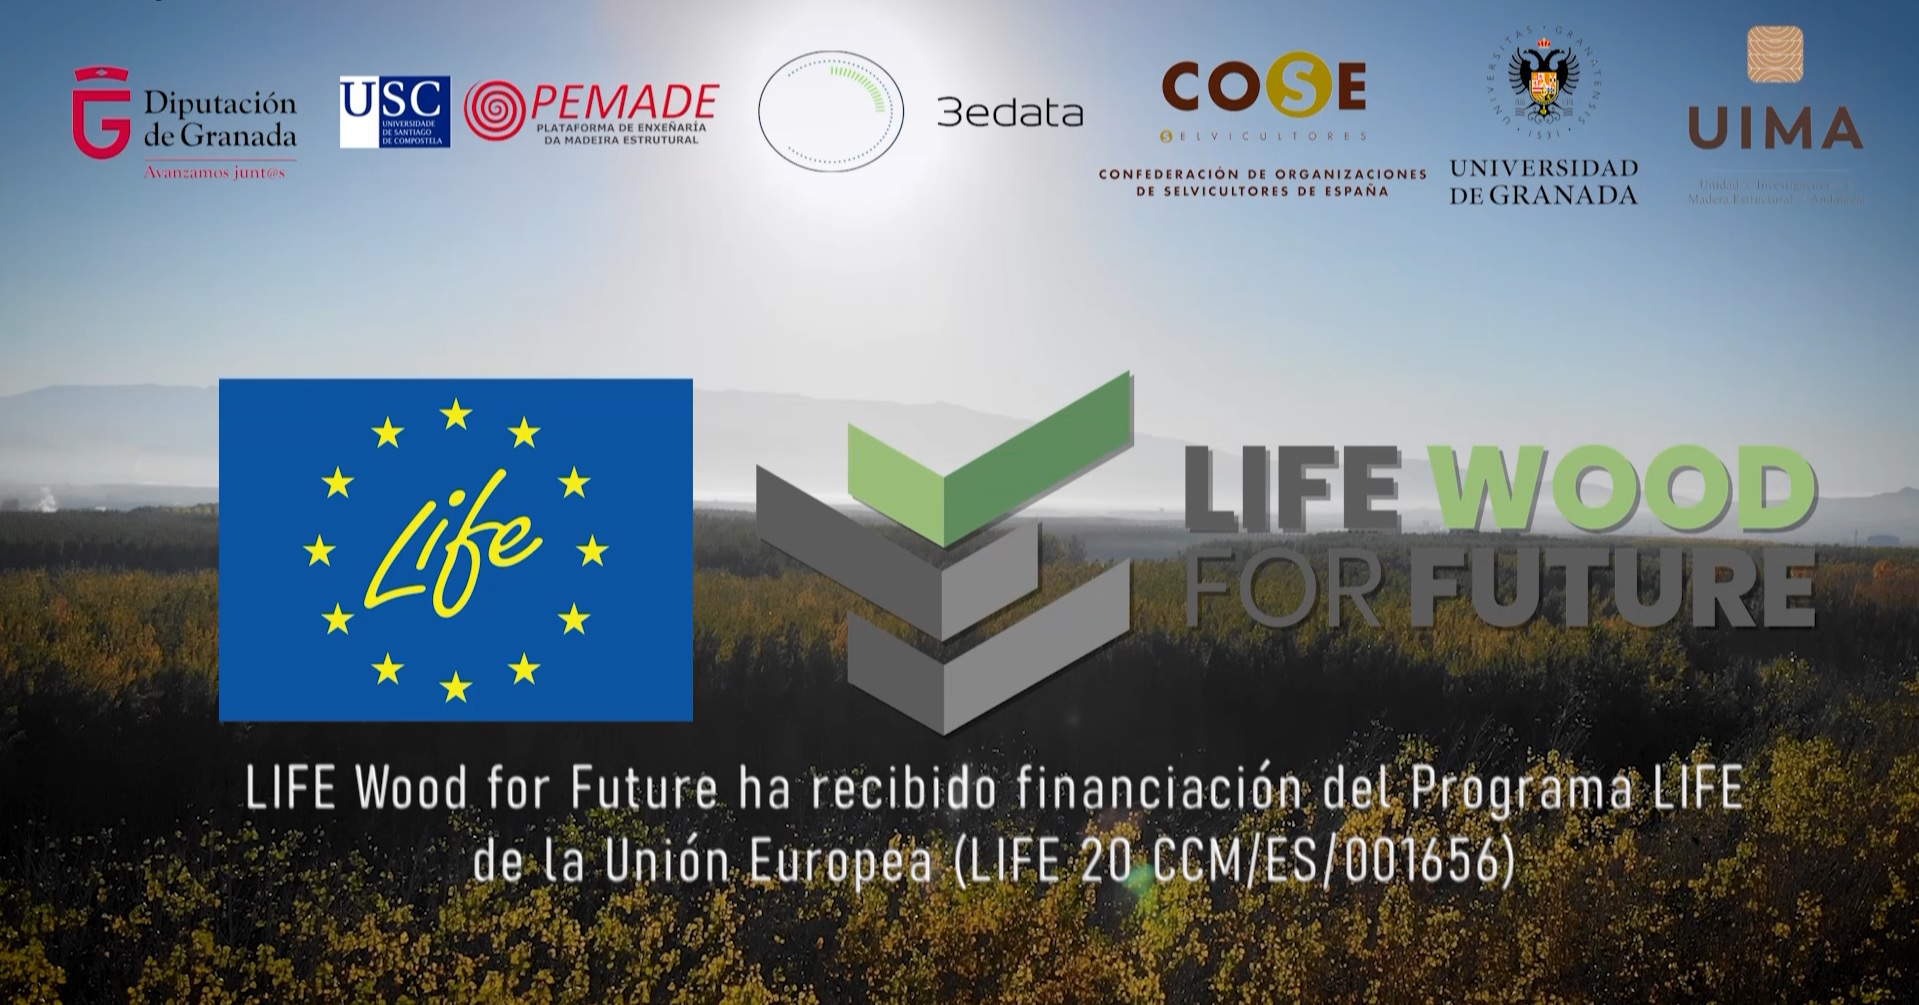 Presentado en sociedad el vídeo de lanzamiento LIFE Wood for Future